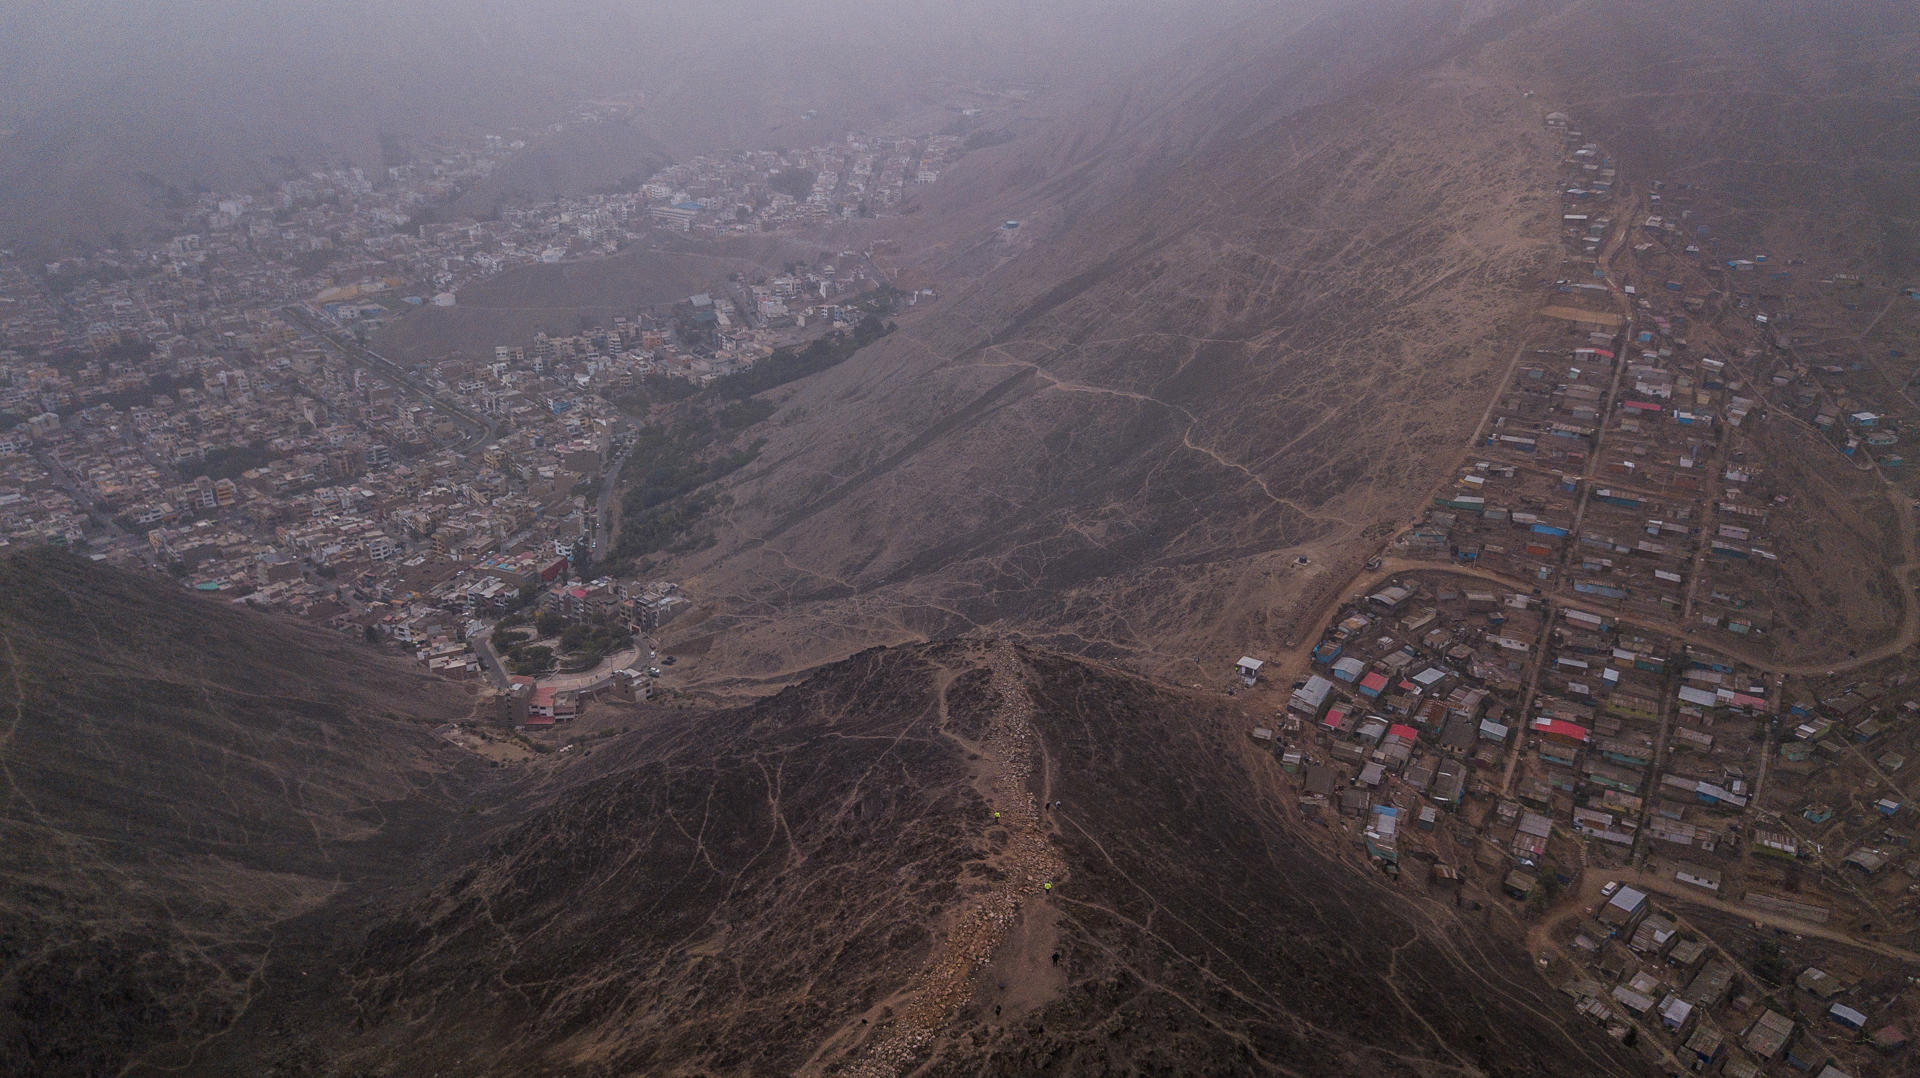 El muro de la vergüenza que separa ricos de pobres en Lima comienza a ser pasto del olvido